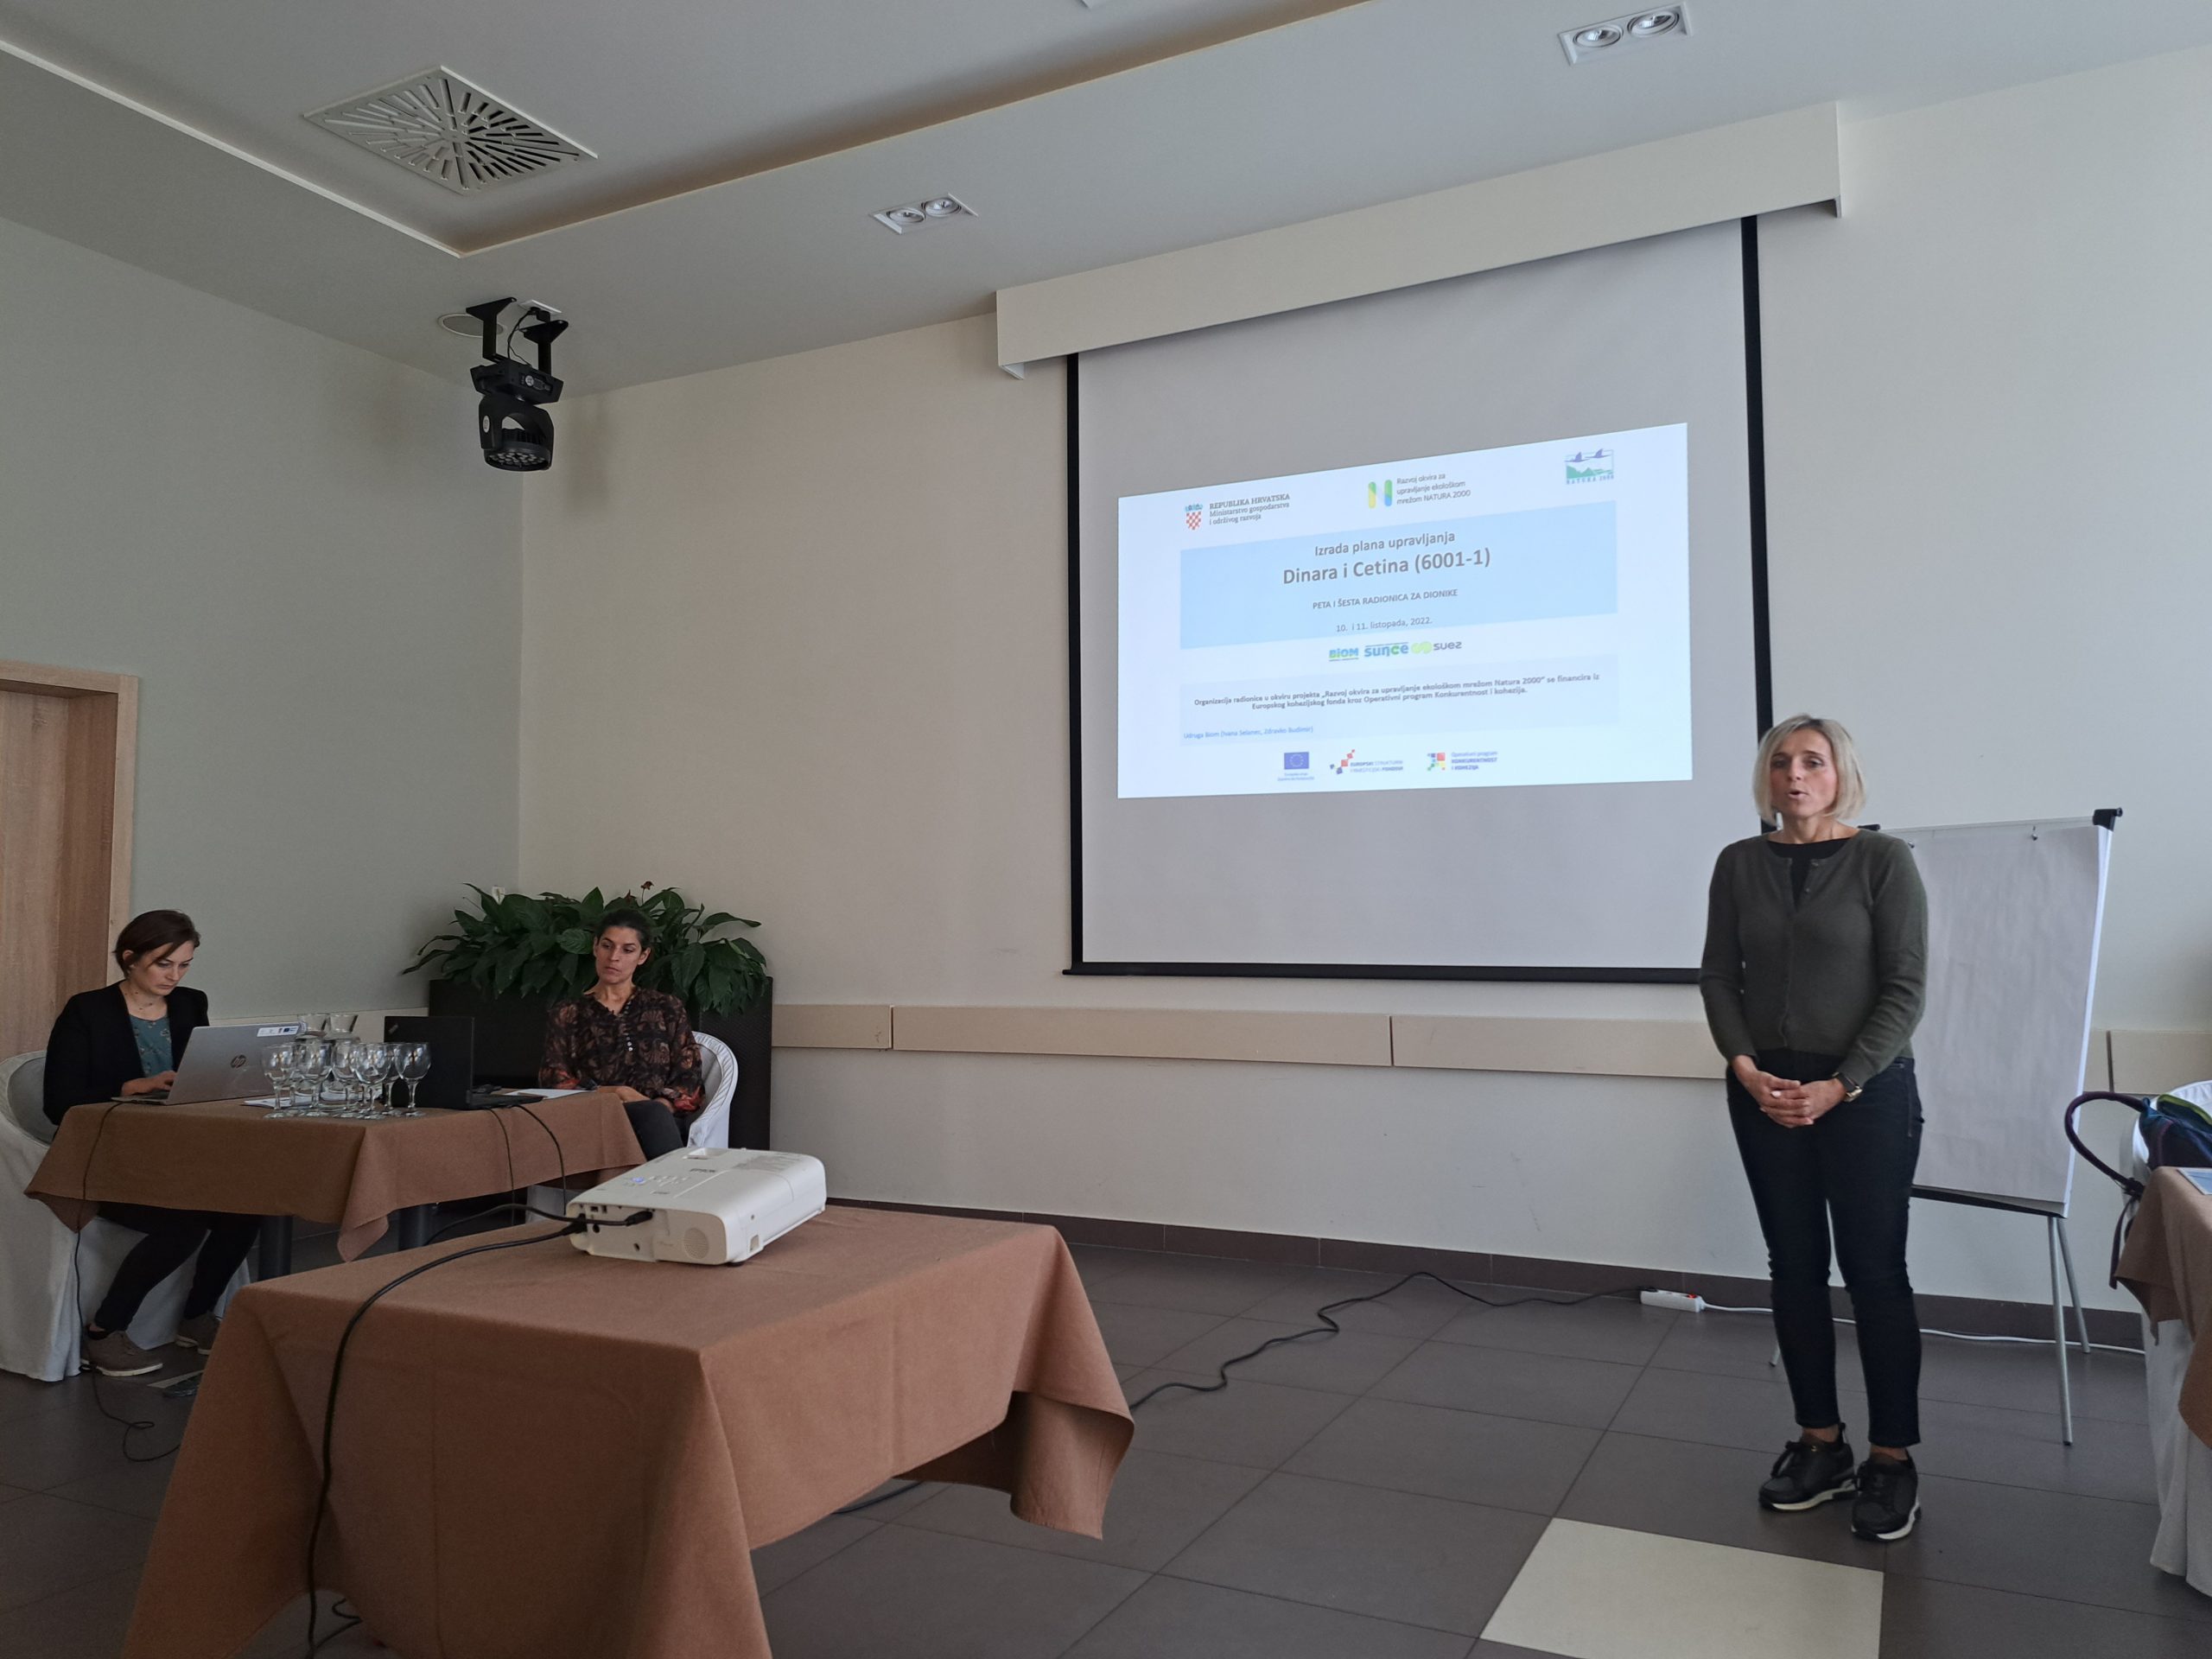 Održana peta radionica za dionike u sklopu izrade Plana upravljanja za zaštićena područja i područja ekološke mreže Dinara i Cetina (PU 6001-1)